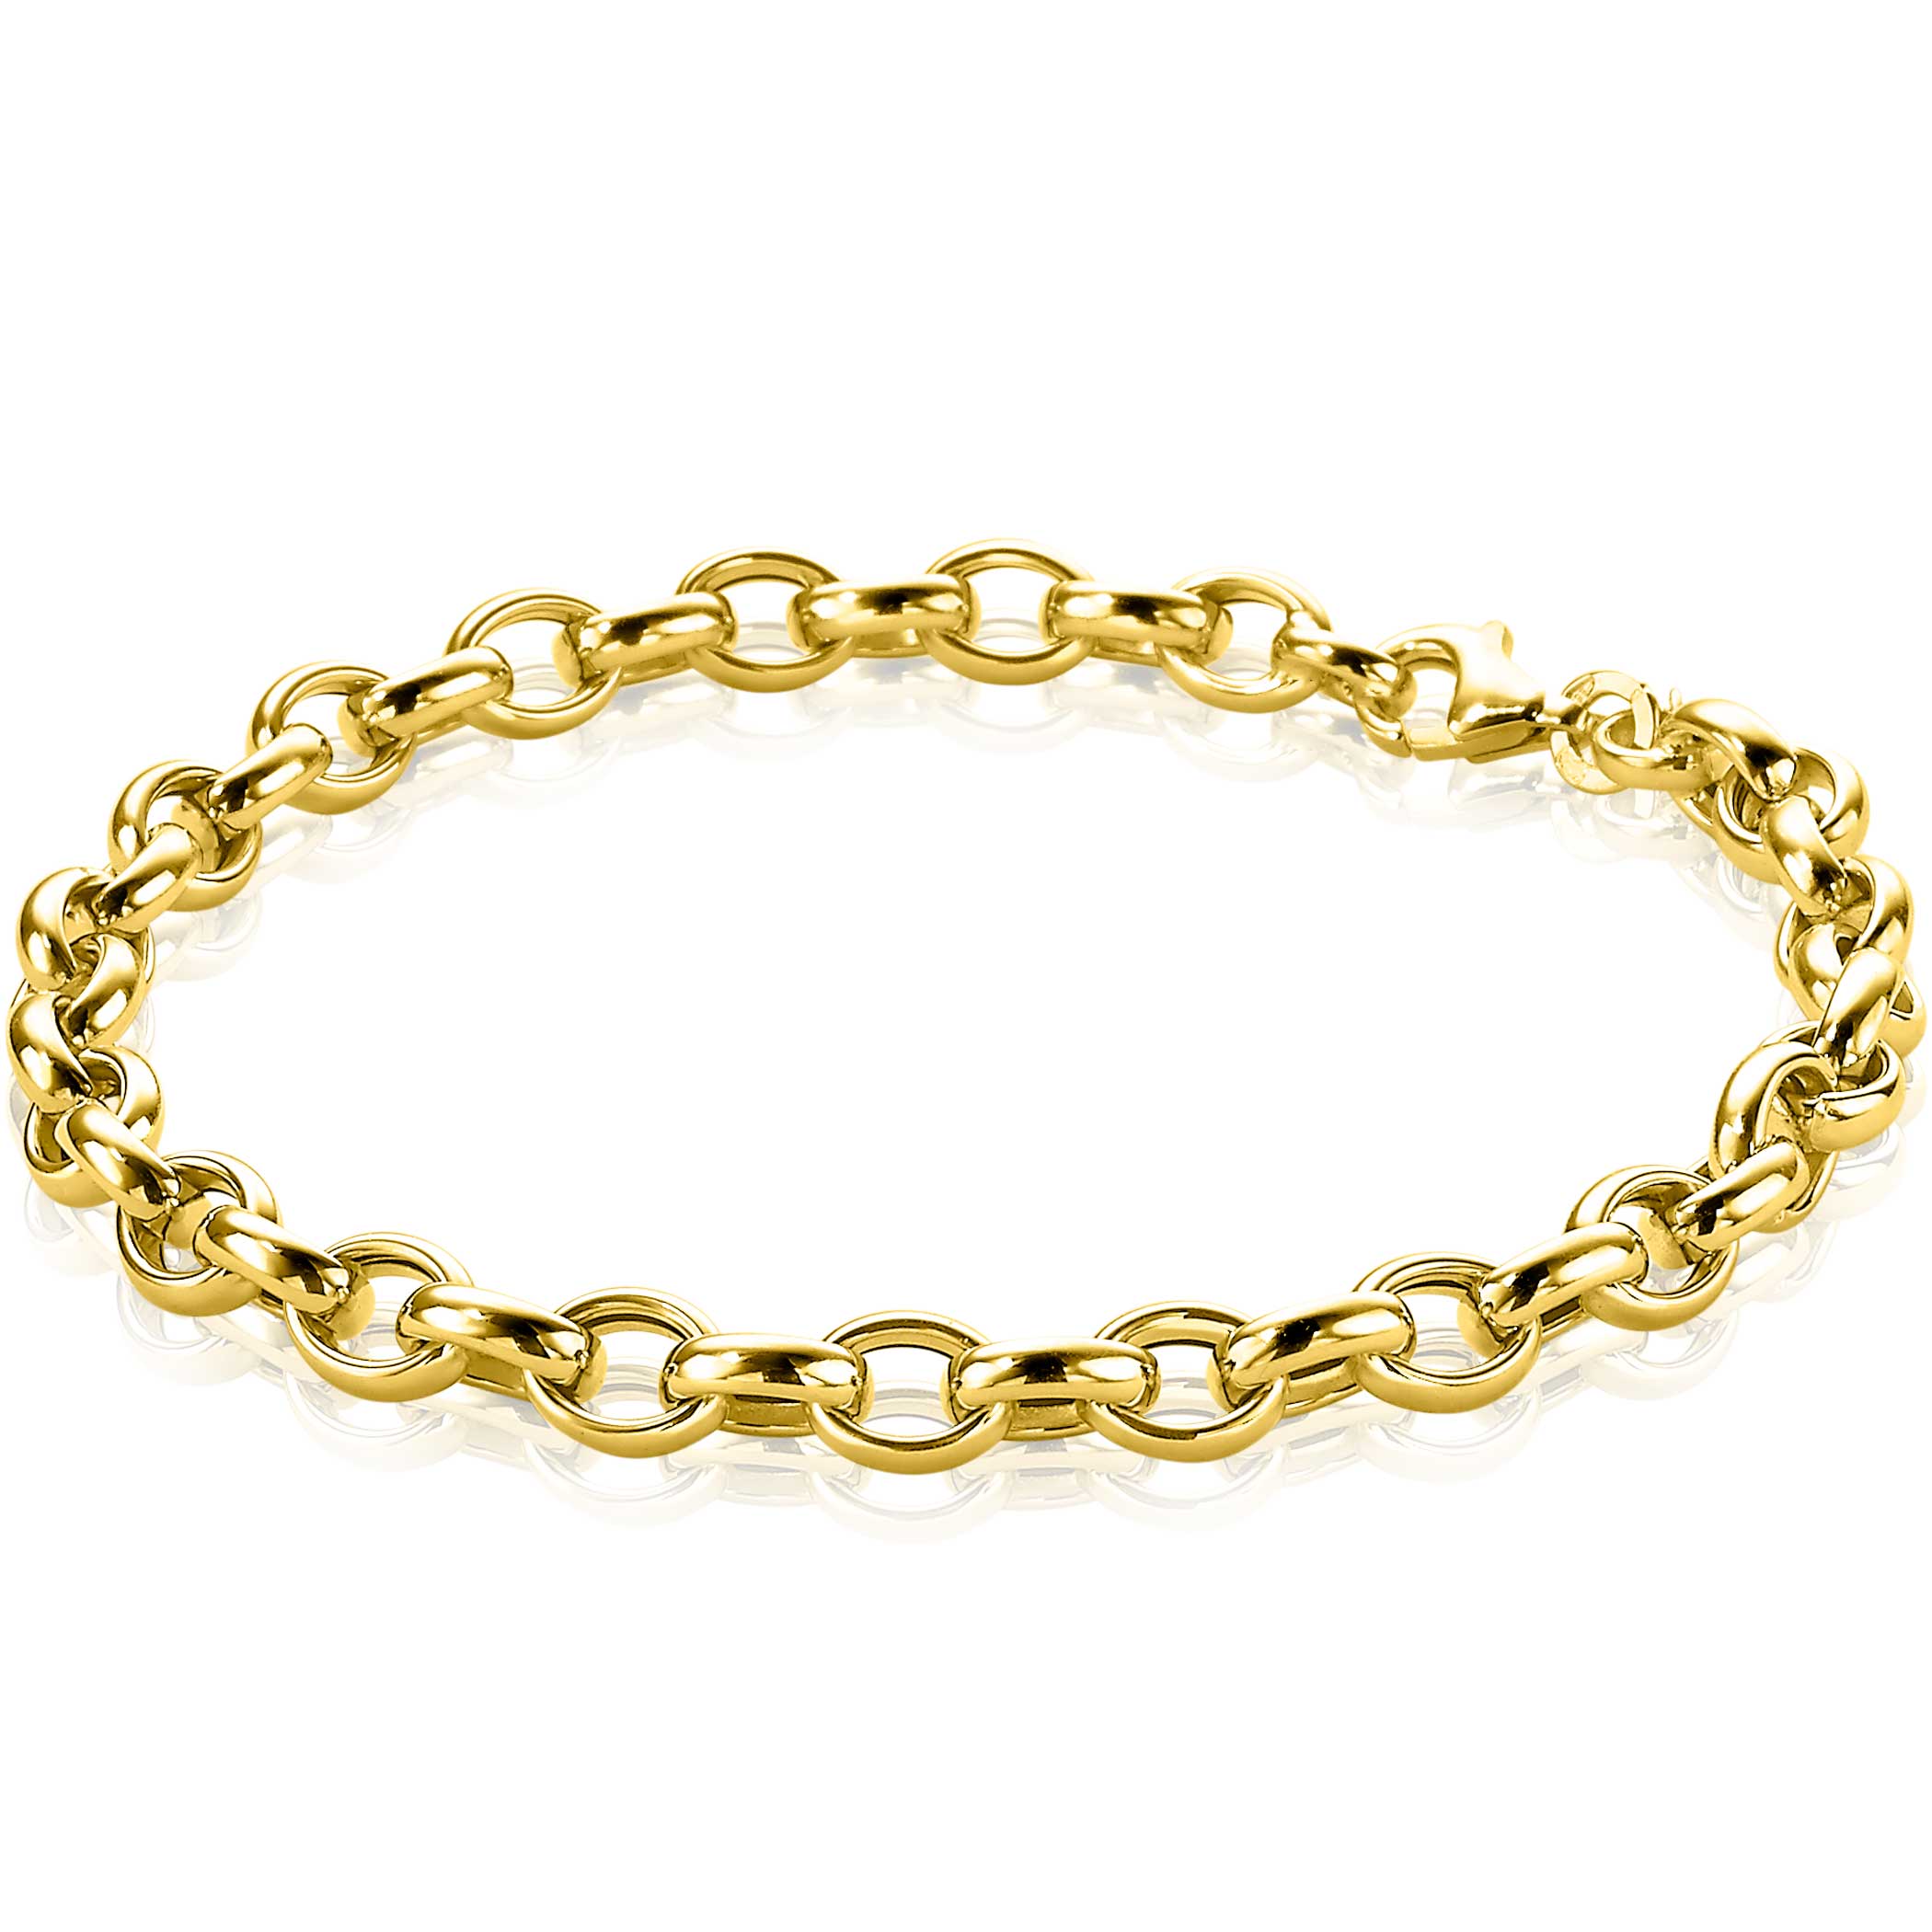 ZINZI Gold karaat gouden armband met ovale schakels 5mm breed - Juwelier Sjaak knijn